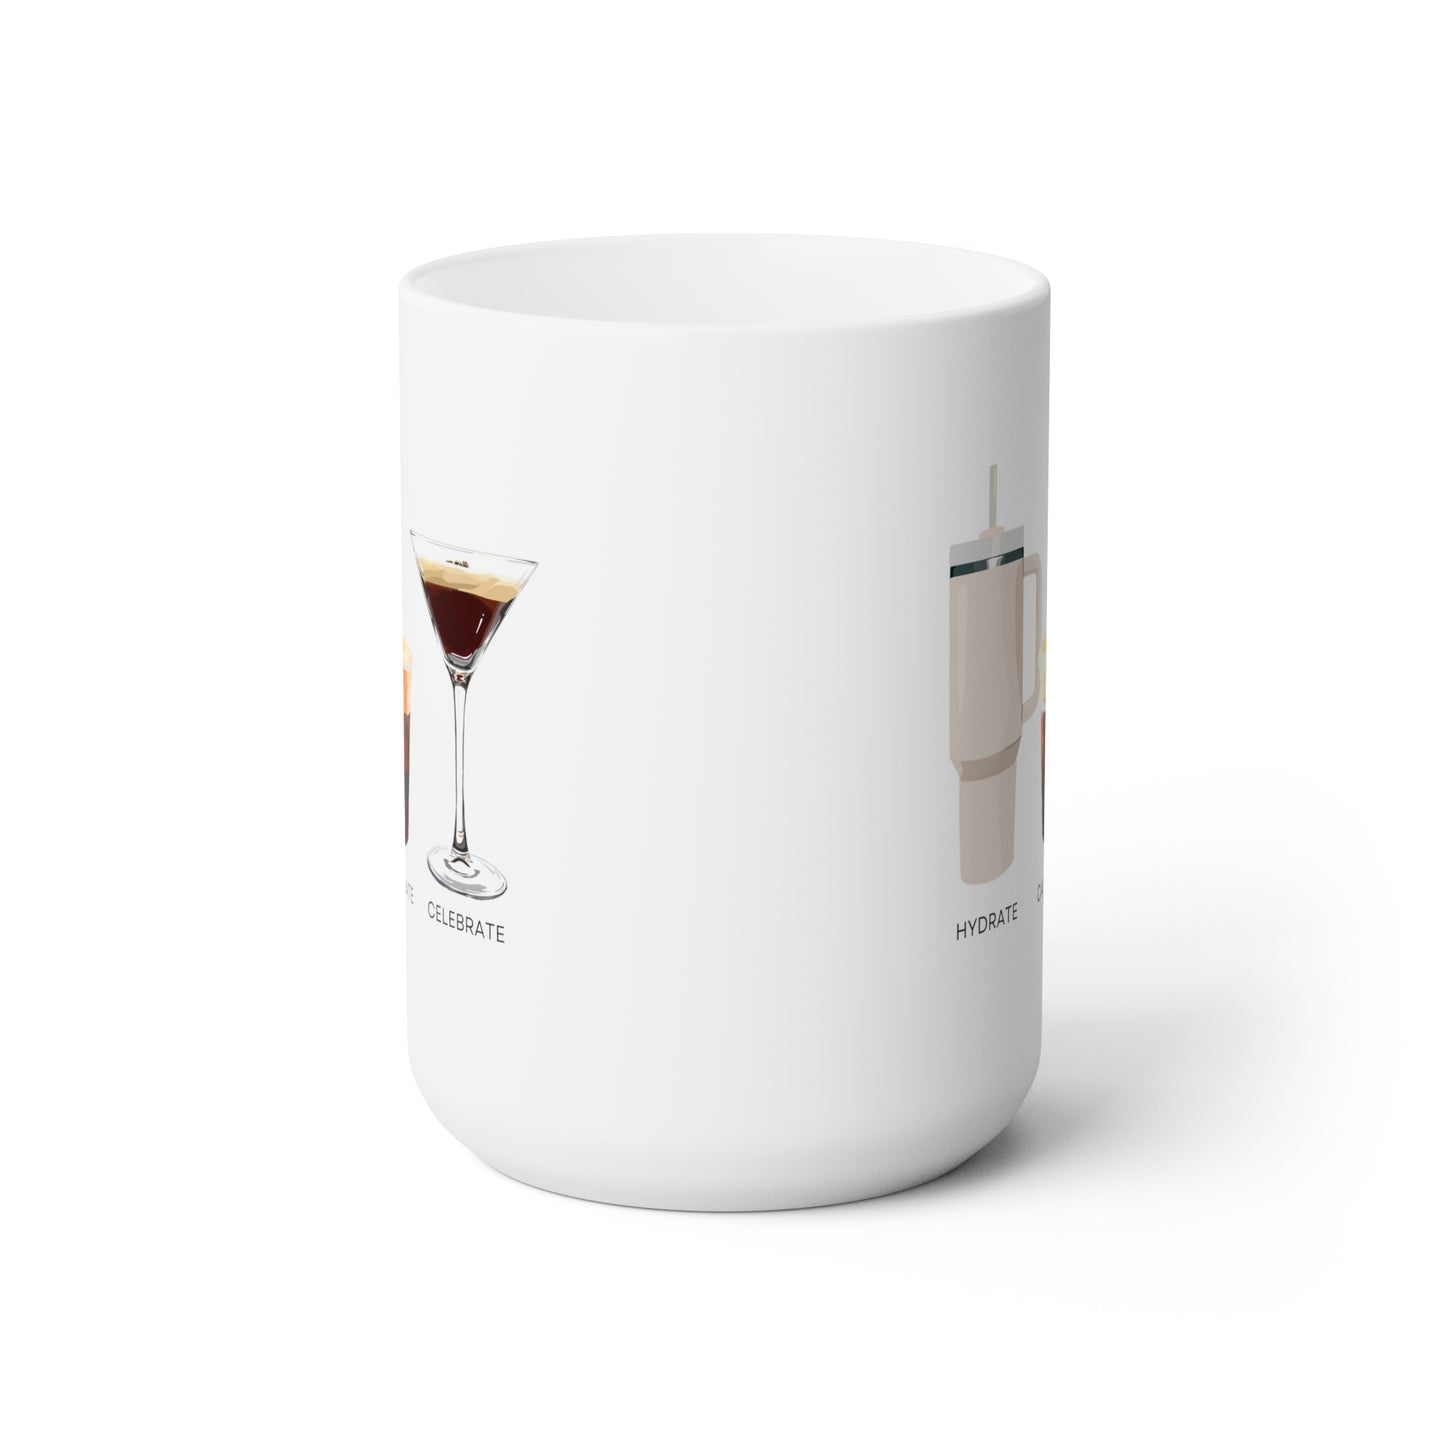 Hydrate Caffeinate Celebrate Ceramic Mug 15oz | Water Coffee Espresso Martini